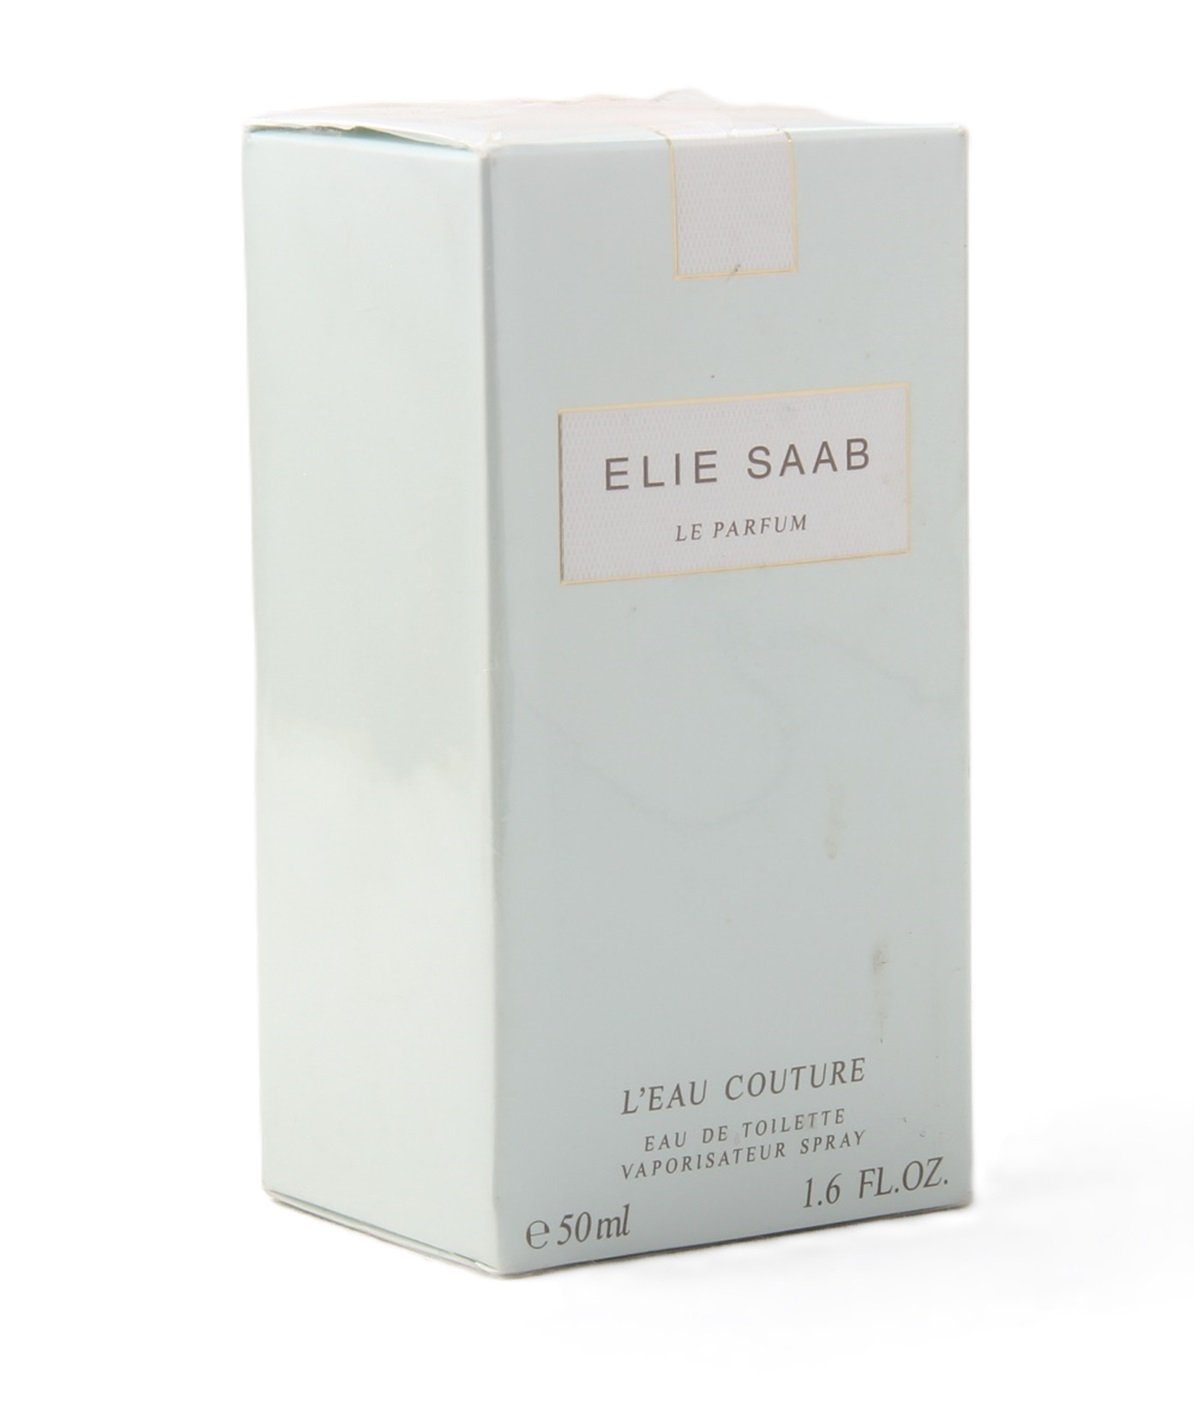 ELIE SAAB Eau de Toilette Elie Saab Le Parfum L'Eau Couture Eau de Toilette 50ml